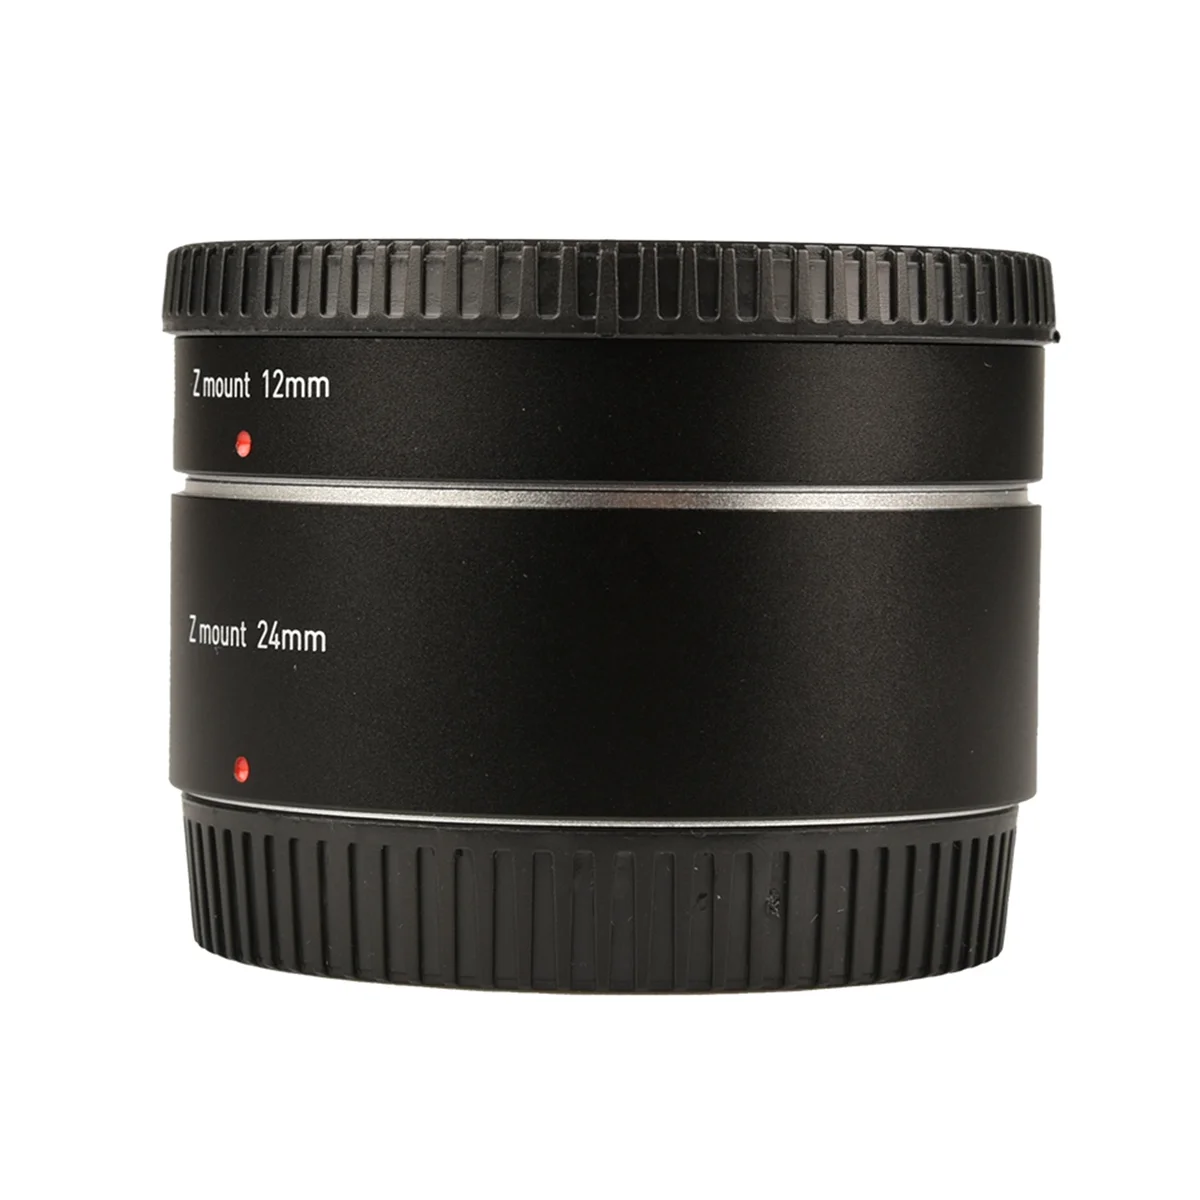 Elektronik Otomatik Odaklama Makro Uzatma Tüpü lens adaptörü Halkası (12mm + 24mm) ayarlamak için Nikon Z Dağı Kamera Z6 Z7 Z50